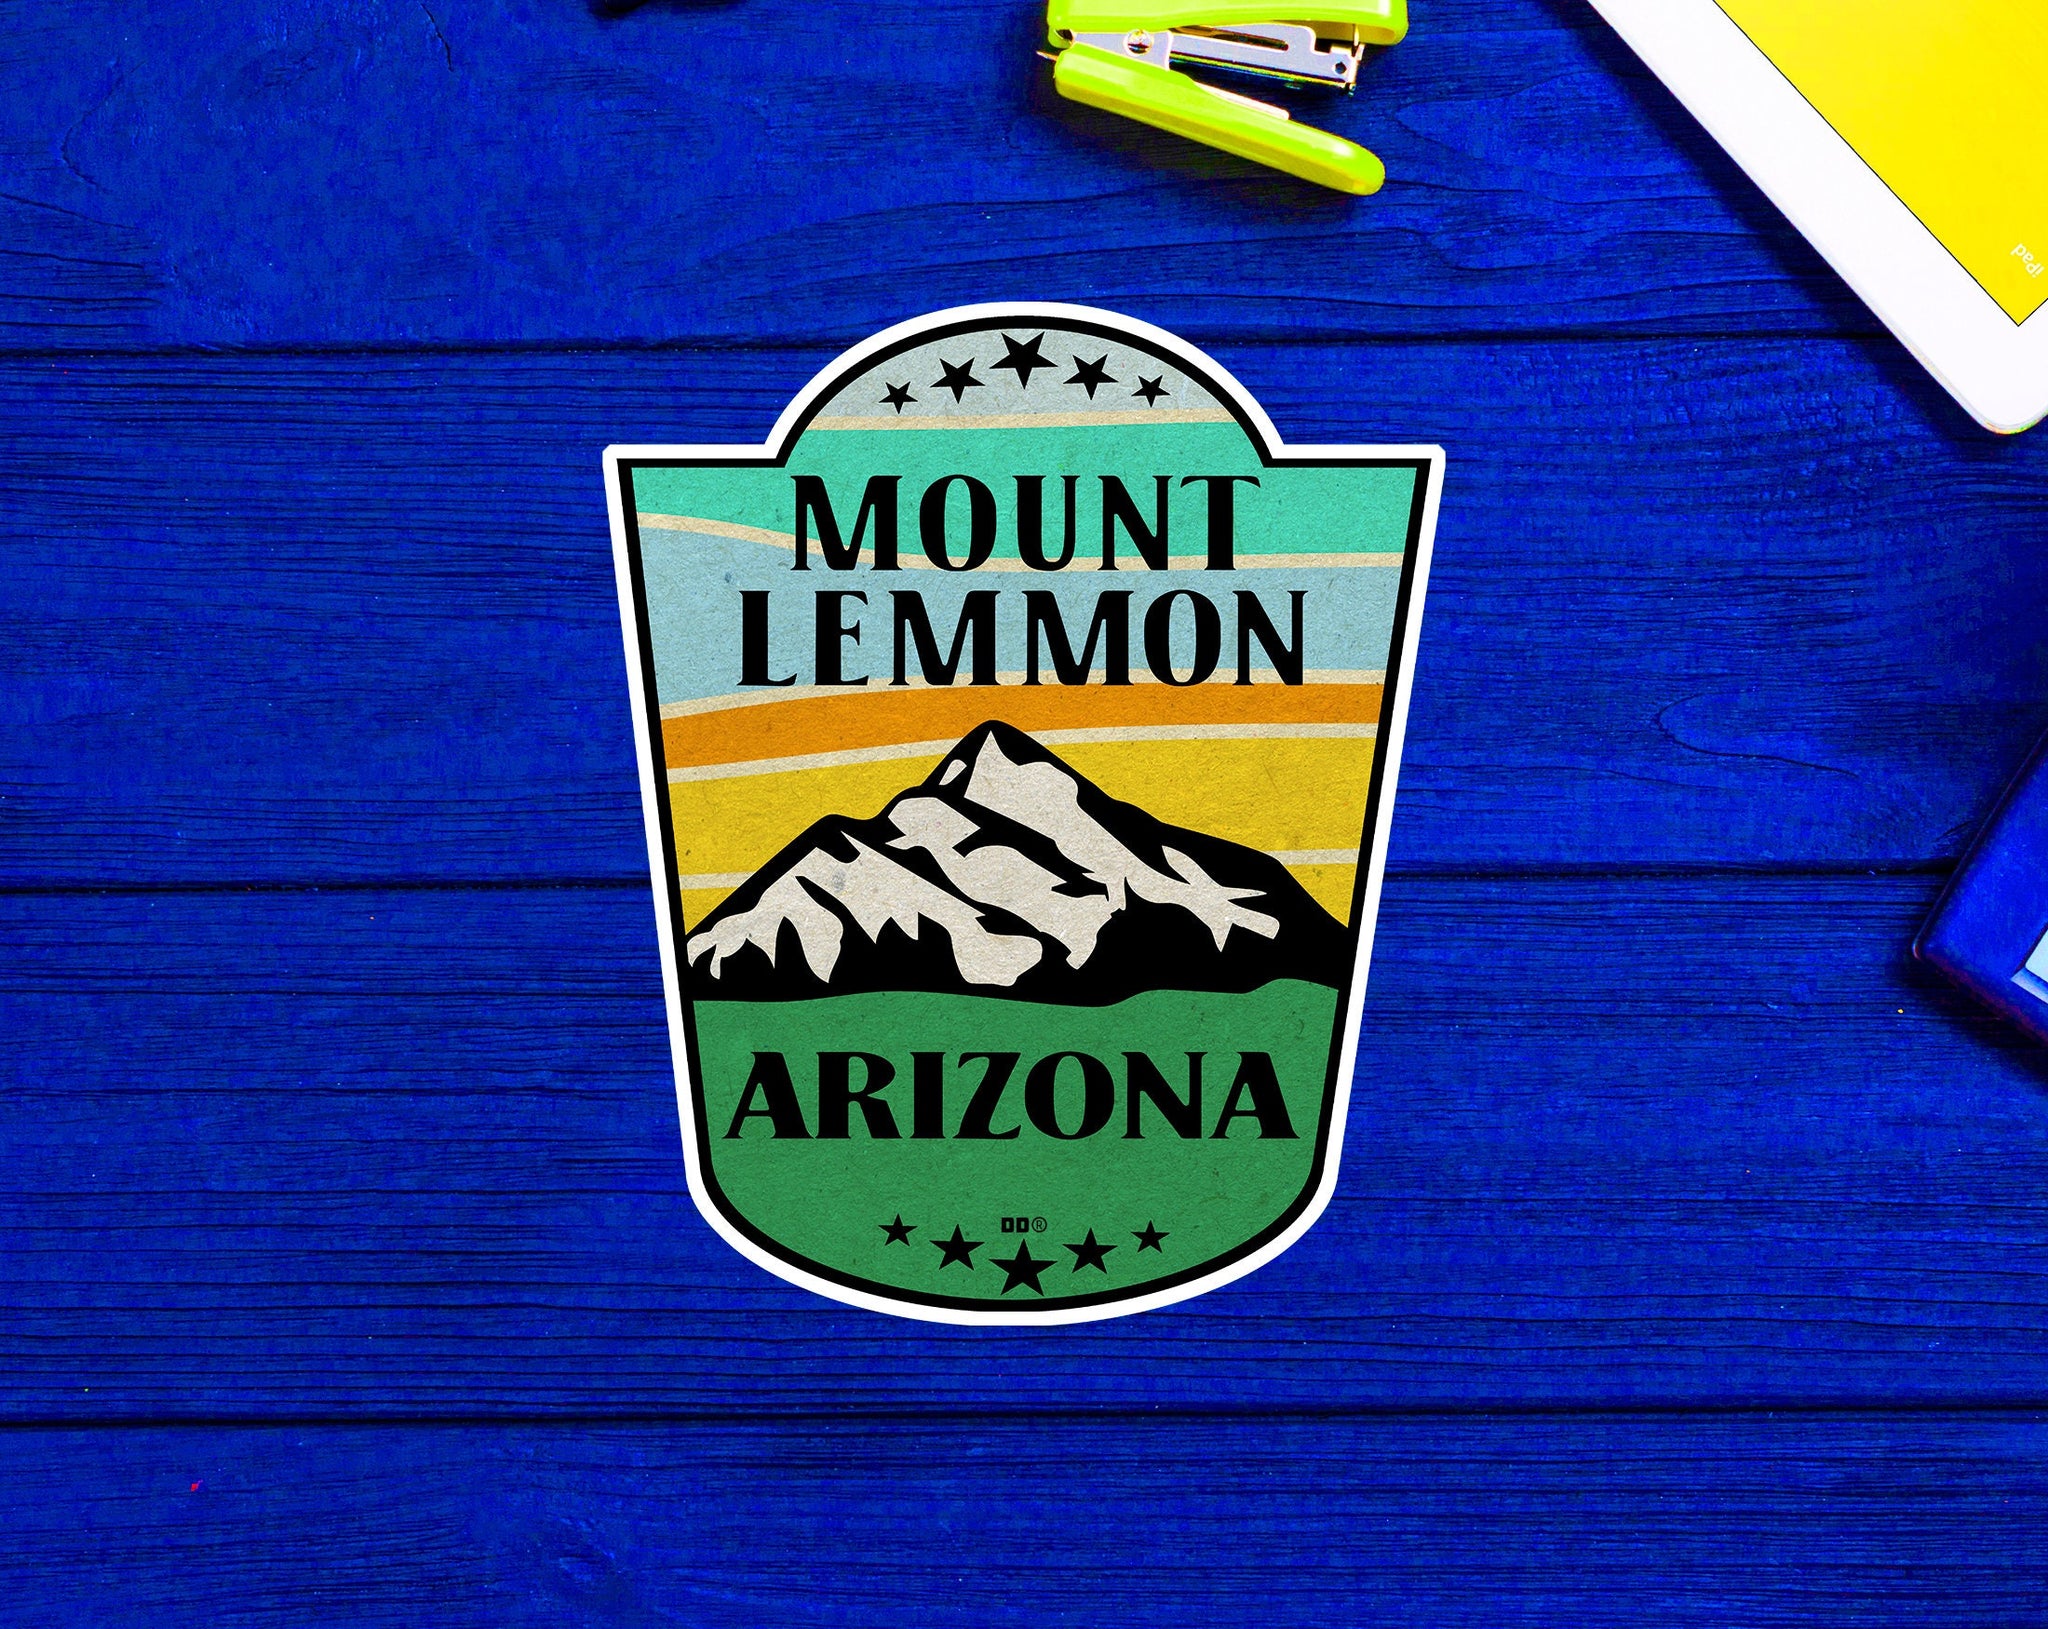 Mount Lemmon Arizona Tucson Santa Catalina Mountains Coronado National Forest Sticker 3.7"